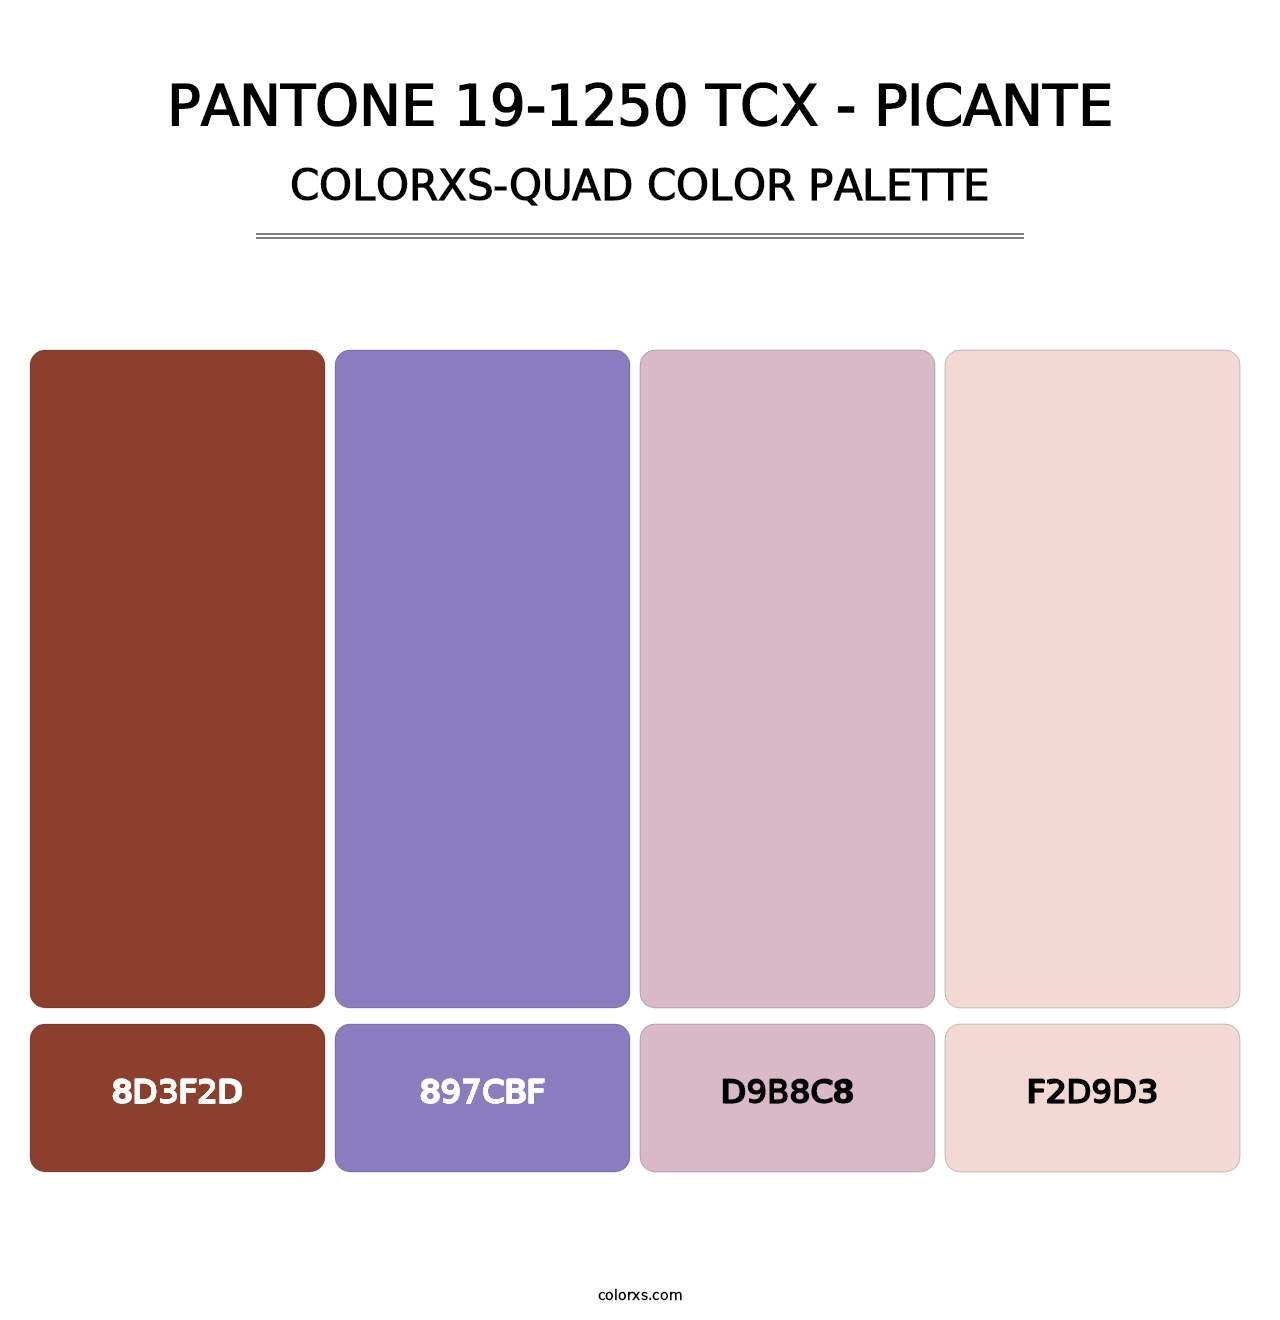 PANTONE 19-1250 TCX - Picante - Colorxs Quad Palette